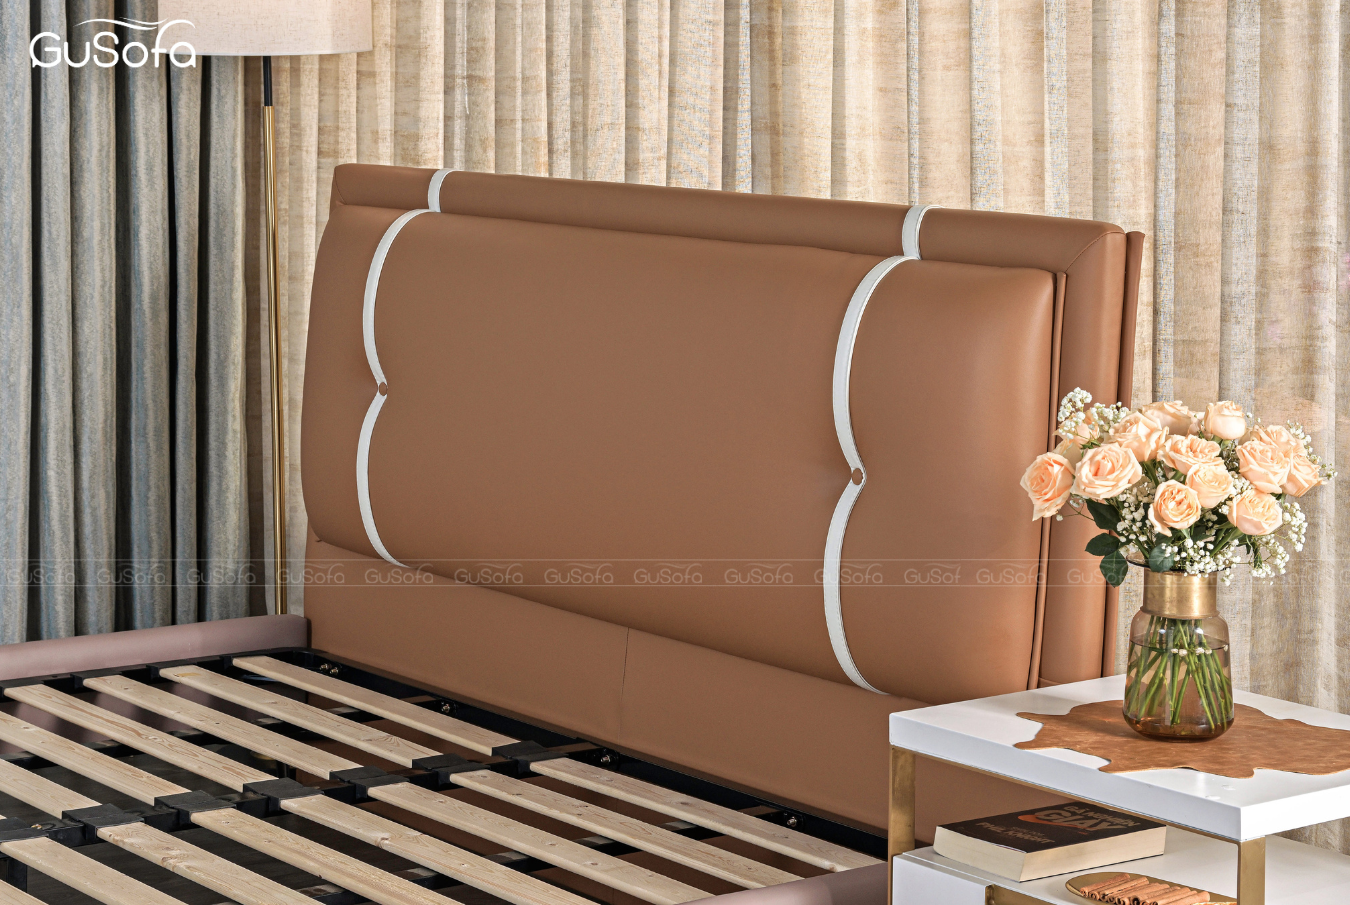  Giường BED08 1,8m x 2,0m  bọc da tổng hợp Microfiber 